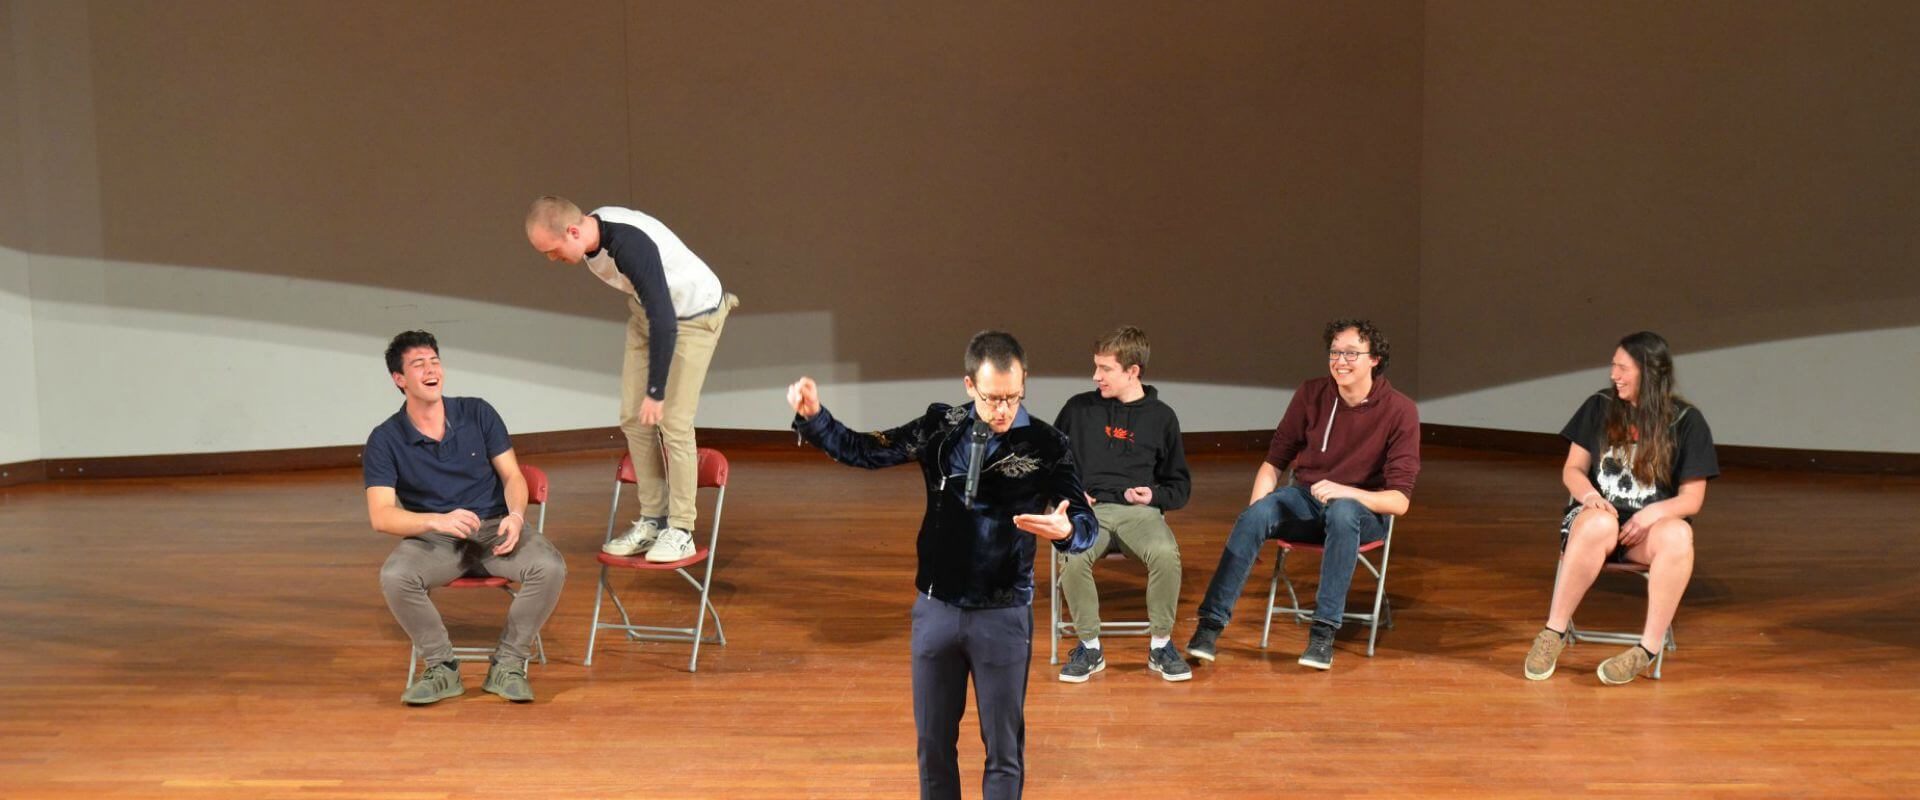 Showhypnotiseur hypnotiseert burgerlijk ingenieur studenten tijdens hypnoseshow - The Charming Thief